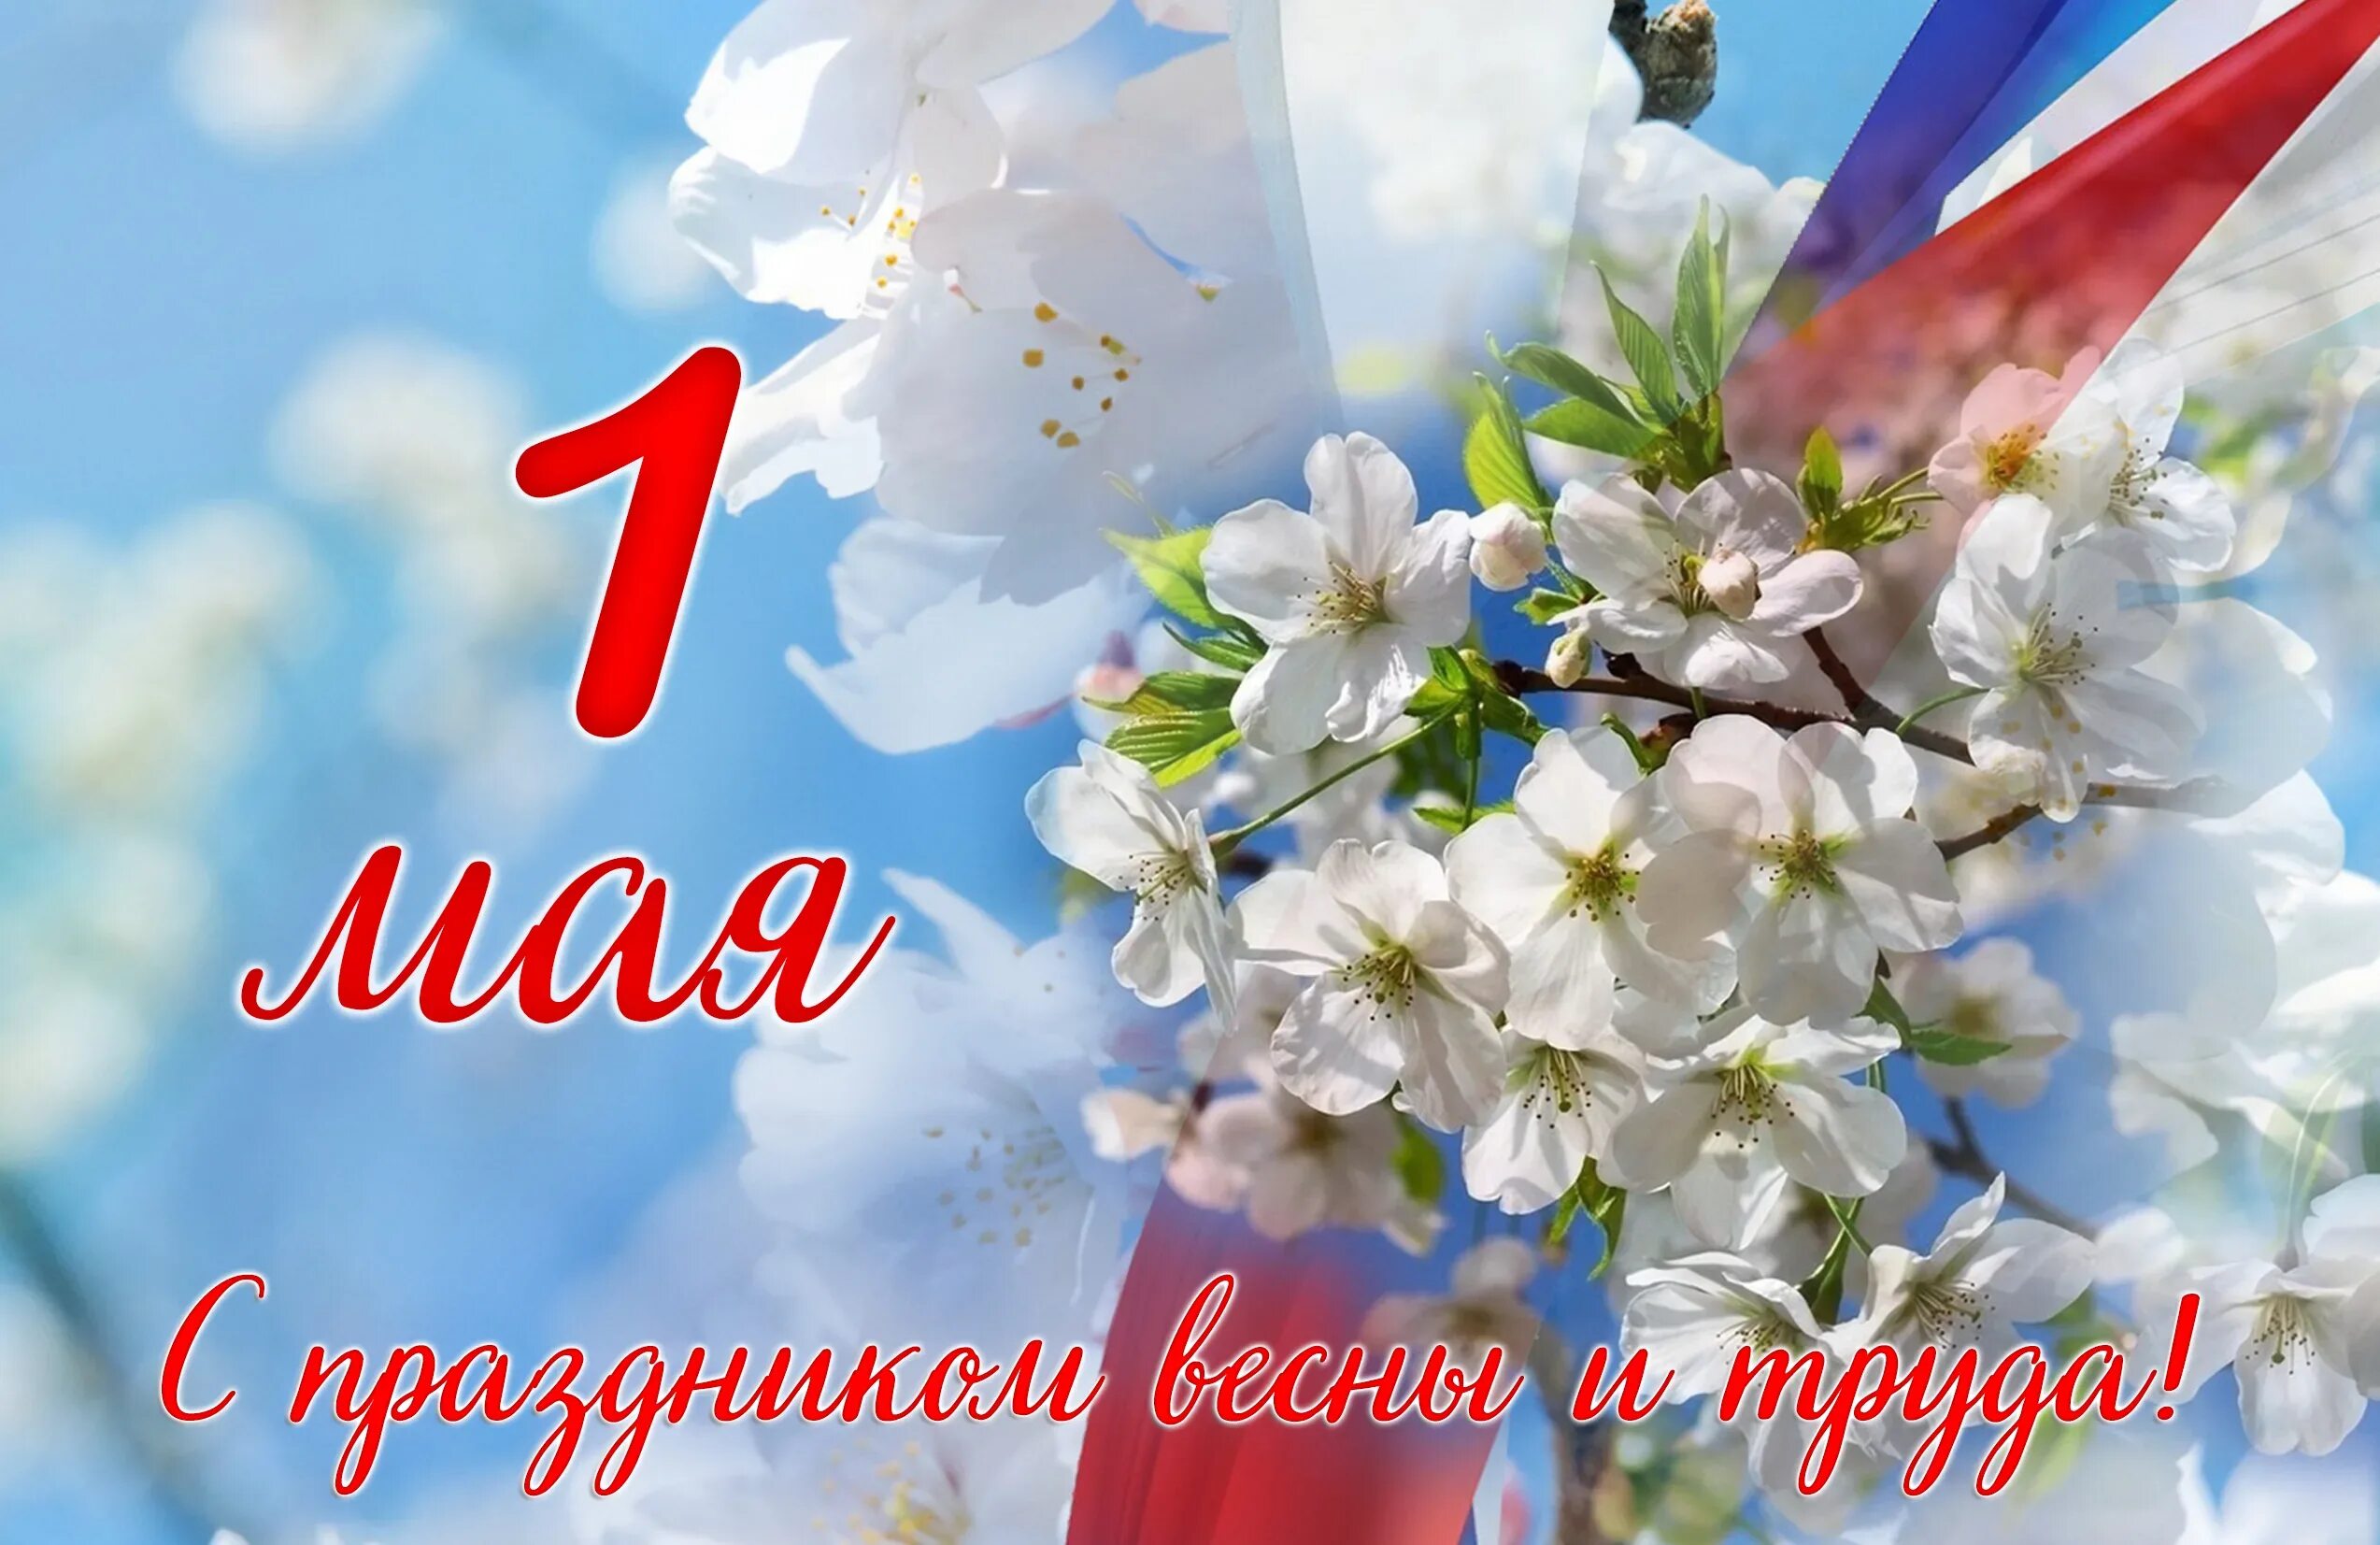 Официальное название 1 мая. 1 Мая. 1 Мая праздник весны и труда. Поздравление с 1 мая. 1 Мая праздник.